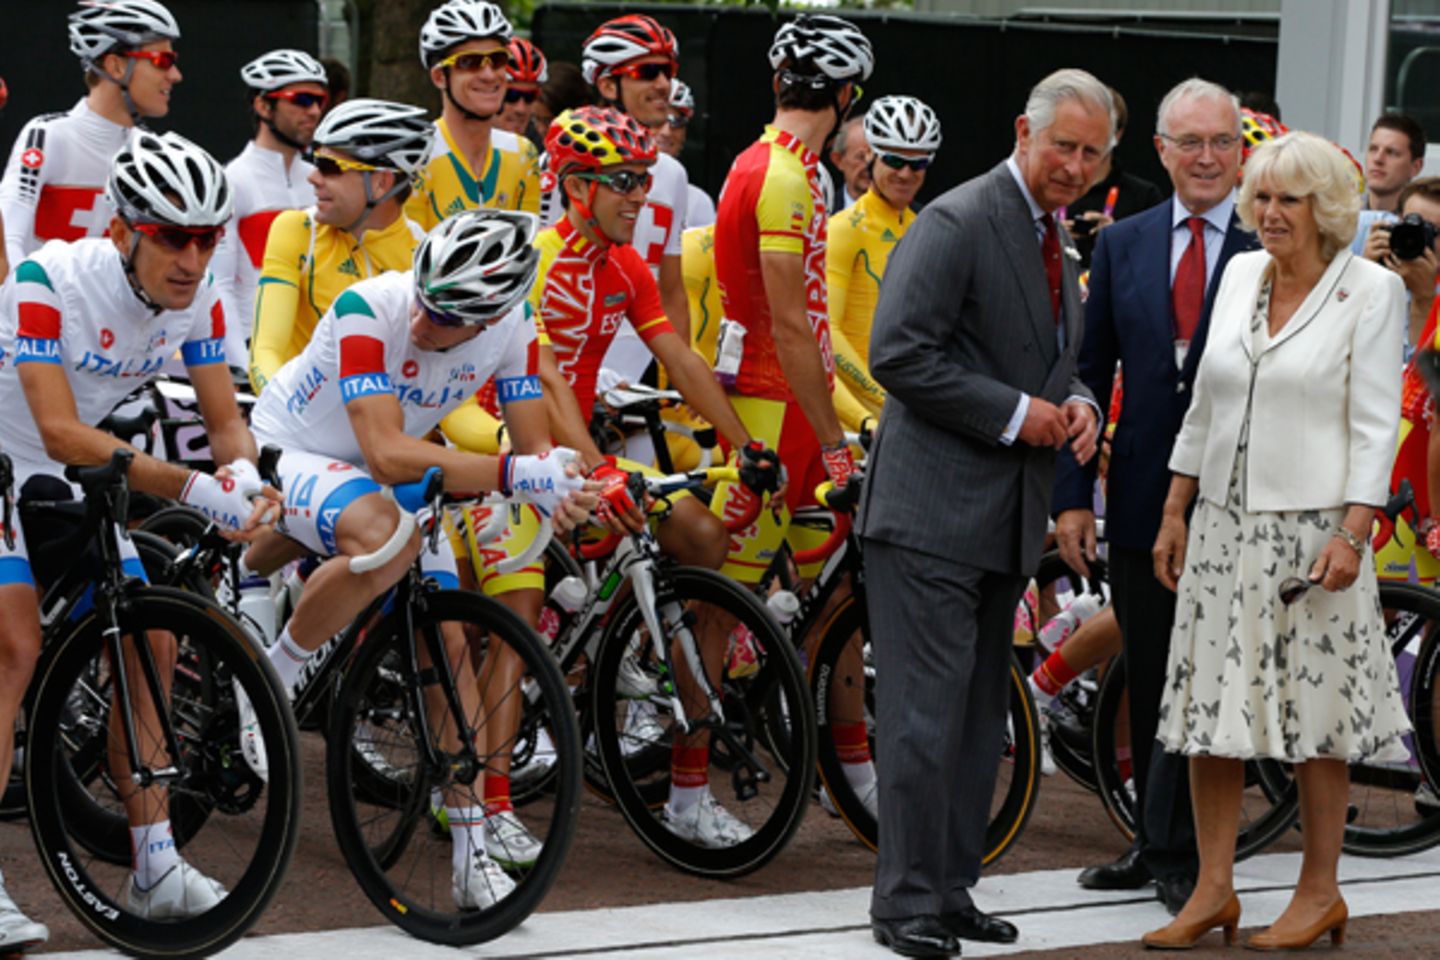 Auf die Plätze, fertig, los! Prinz Charles und Herzogin Camilla interessieren sich für das Radrennen.